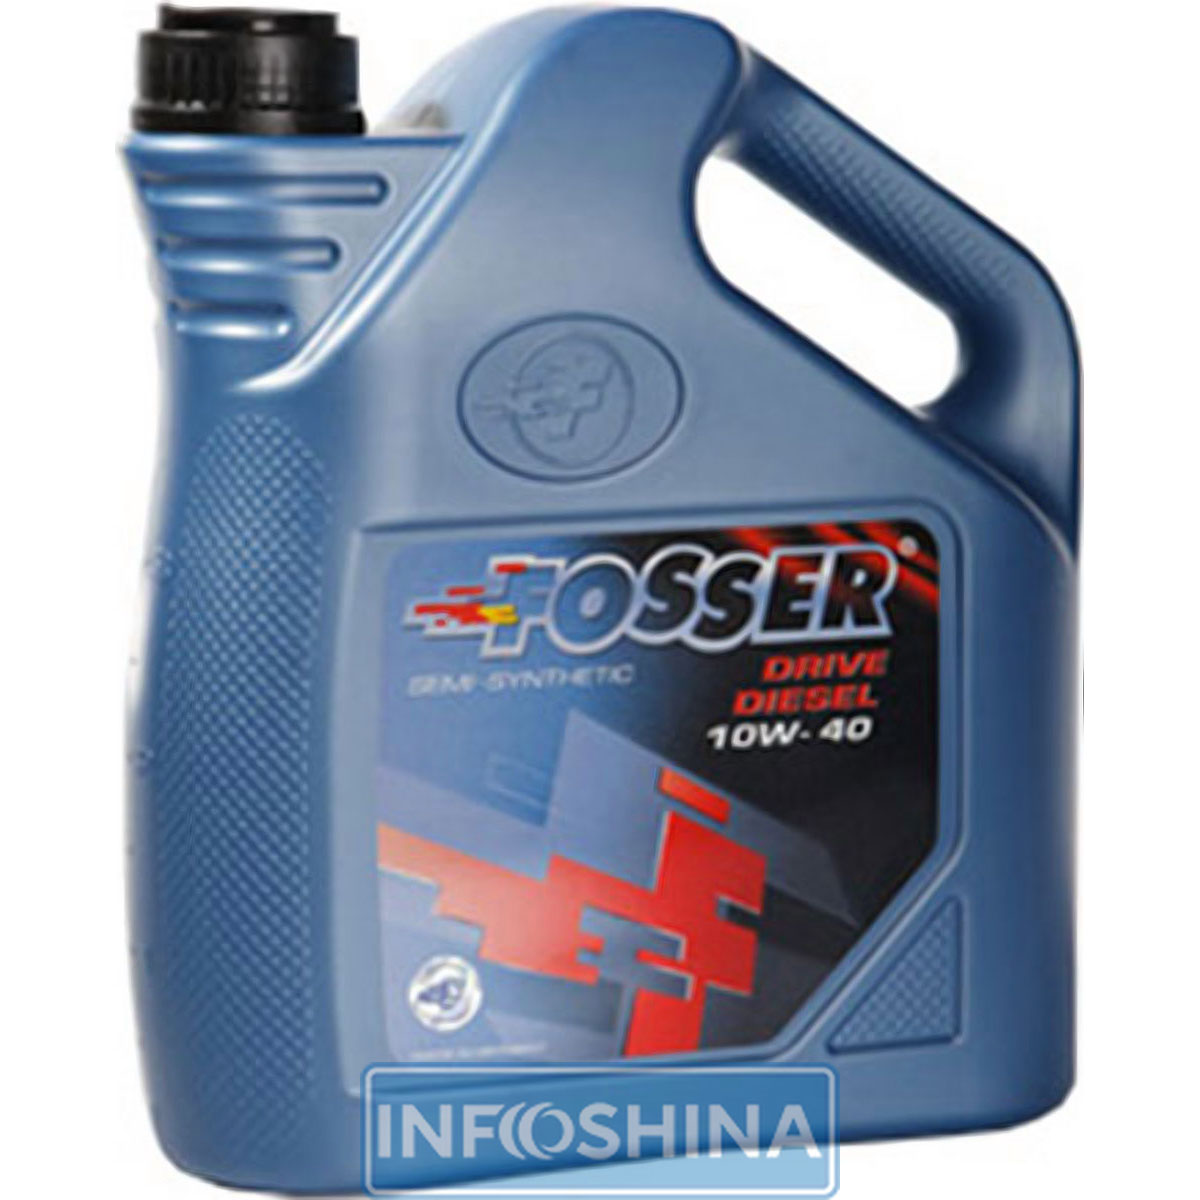 Fosser Drive Diesel 10W-40